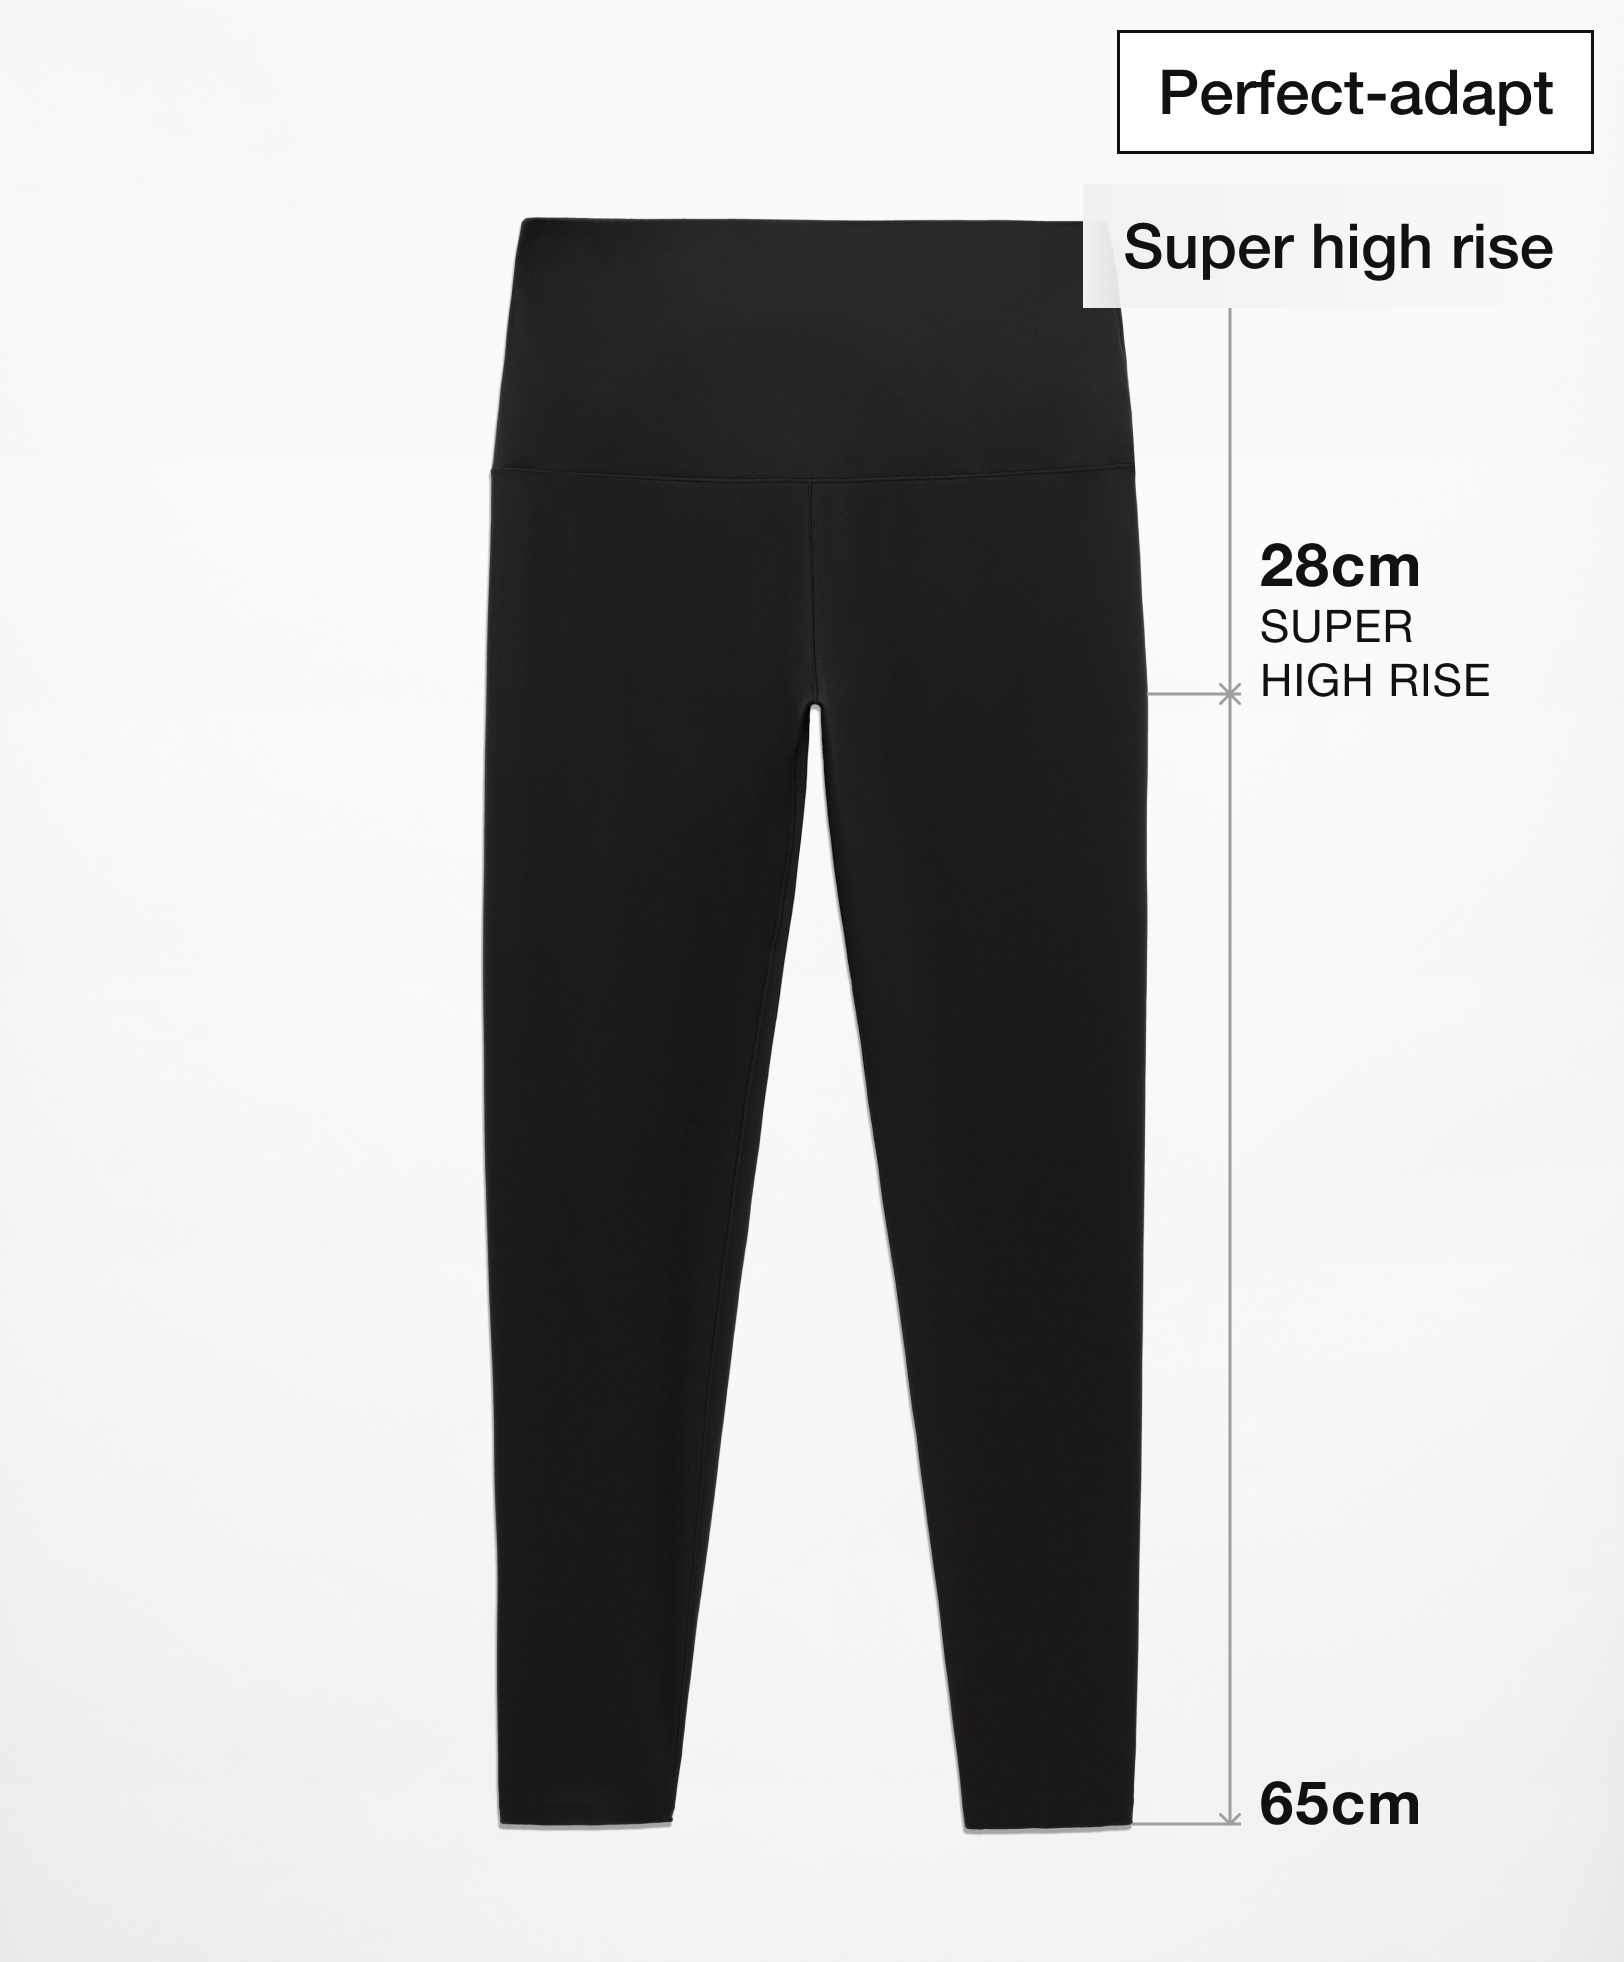 Leggings tobillero super high rise perfect-adapt 65 cm